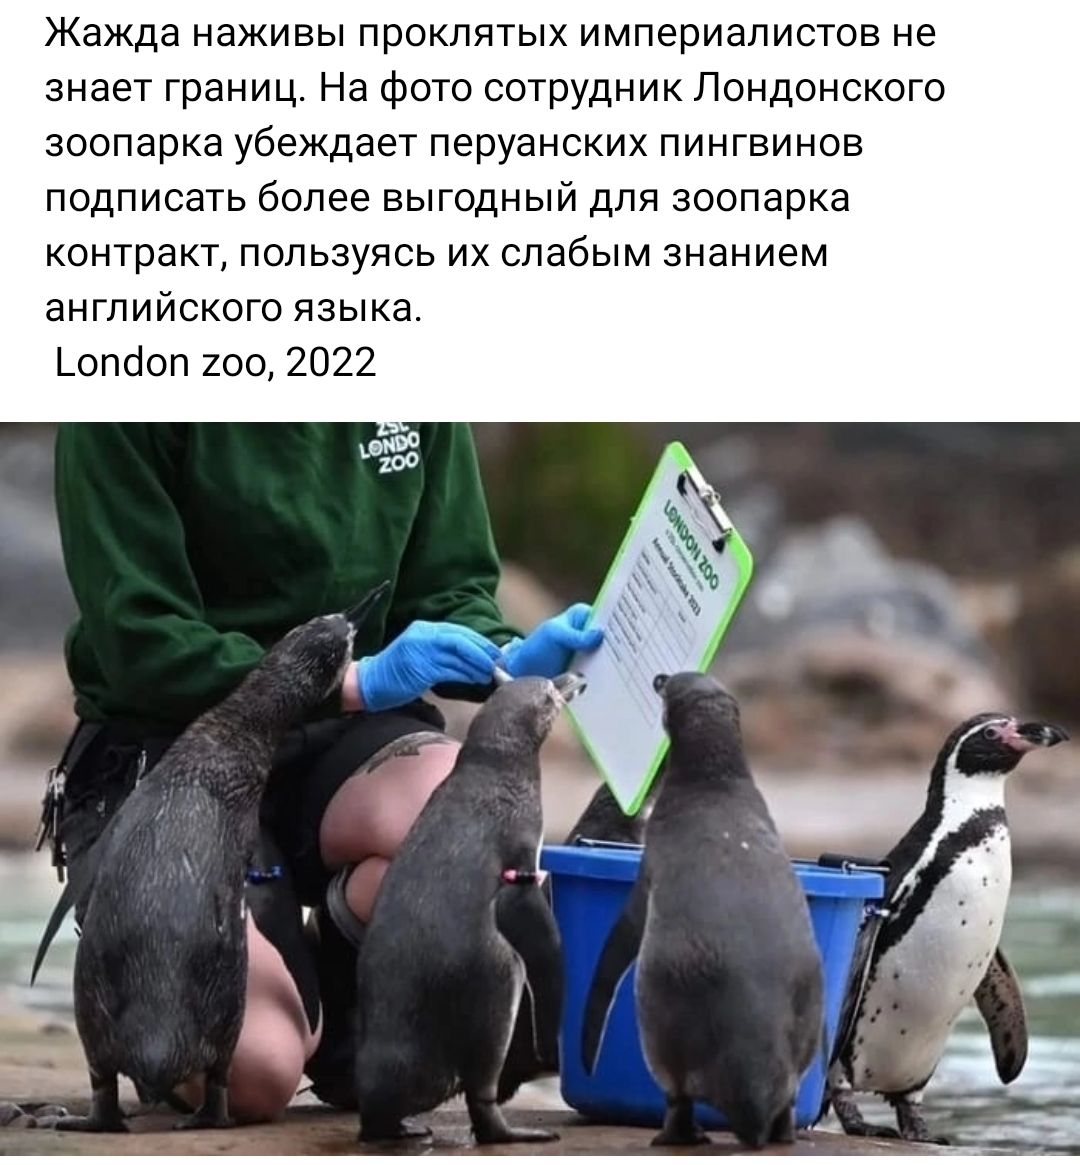 Жажда наживы проклятых империалистов не знает границ На фото сотрудник Лондонского зоопарка убеждает перуанских пингвинов подписать более выгодный для зоппарка контракт пользуясь их слабым знанием английского языка _опсол 100 2022